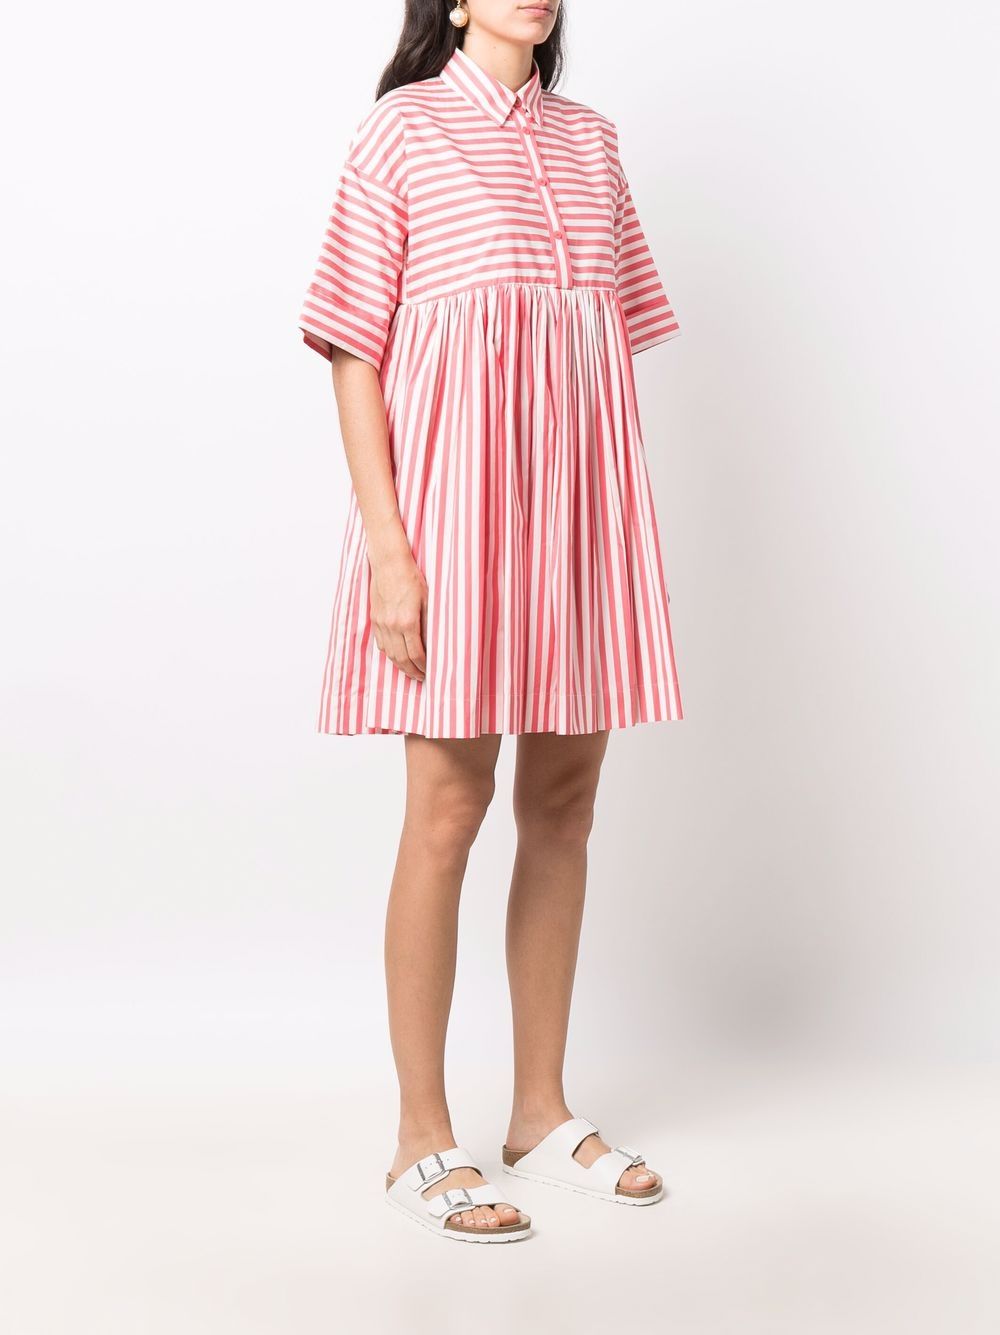 Kate Spade Julia Striped Shirt Dress - Farfetch